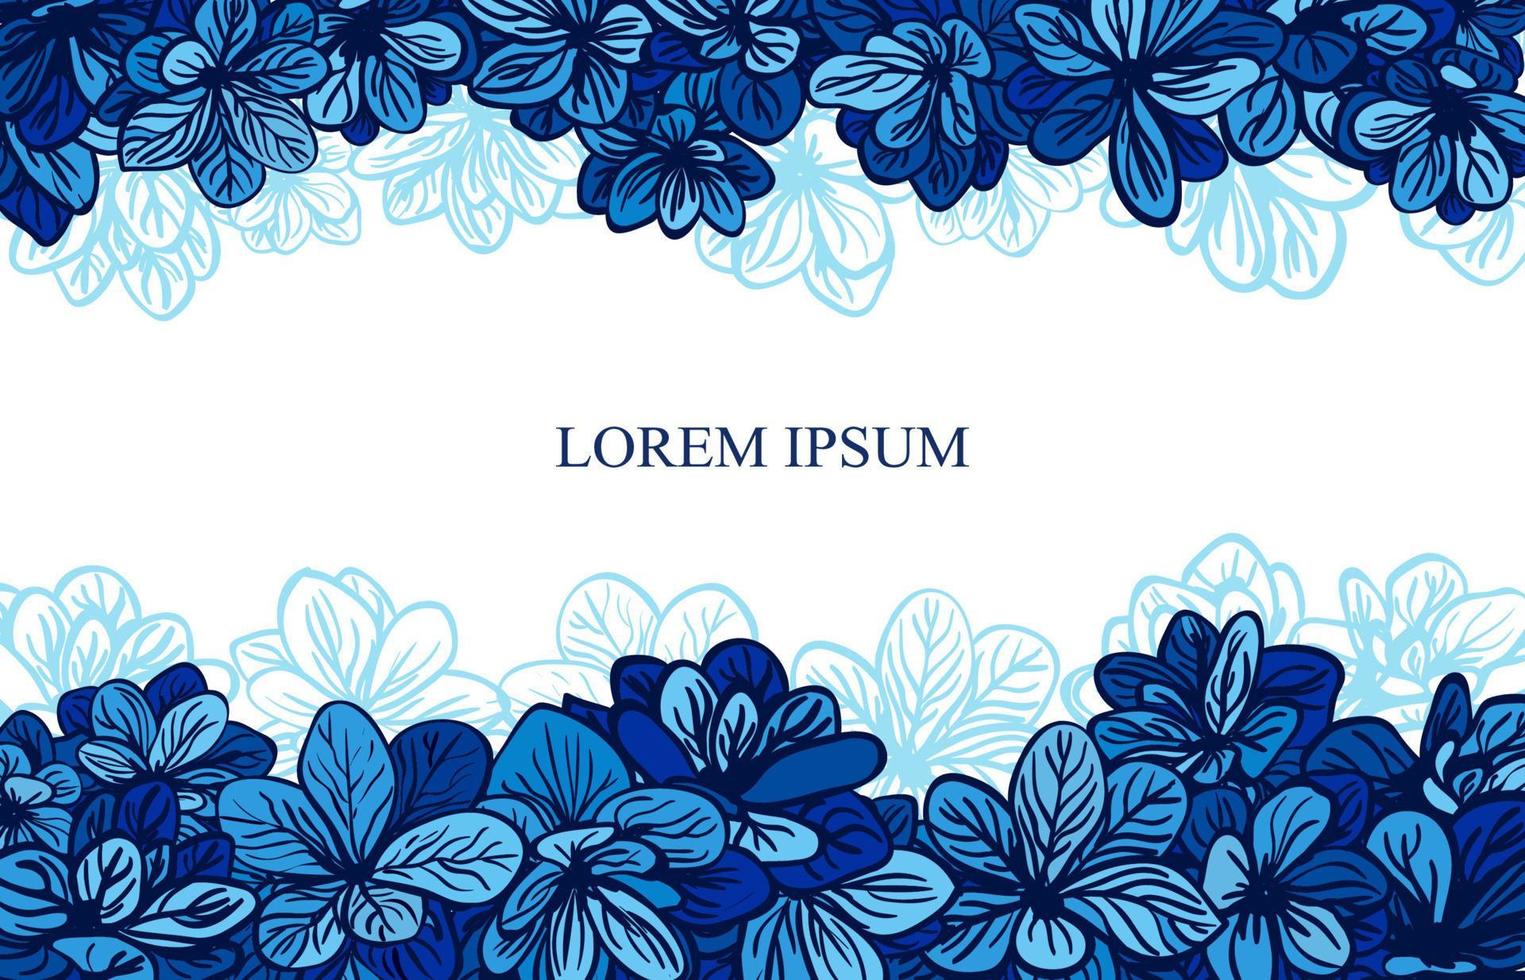 Grußkartenvorlage mit süßen blauen Blumen vektor